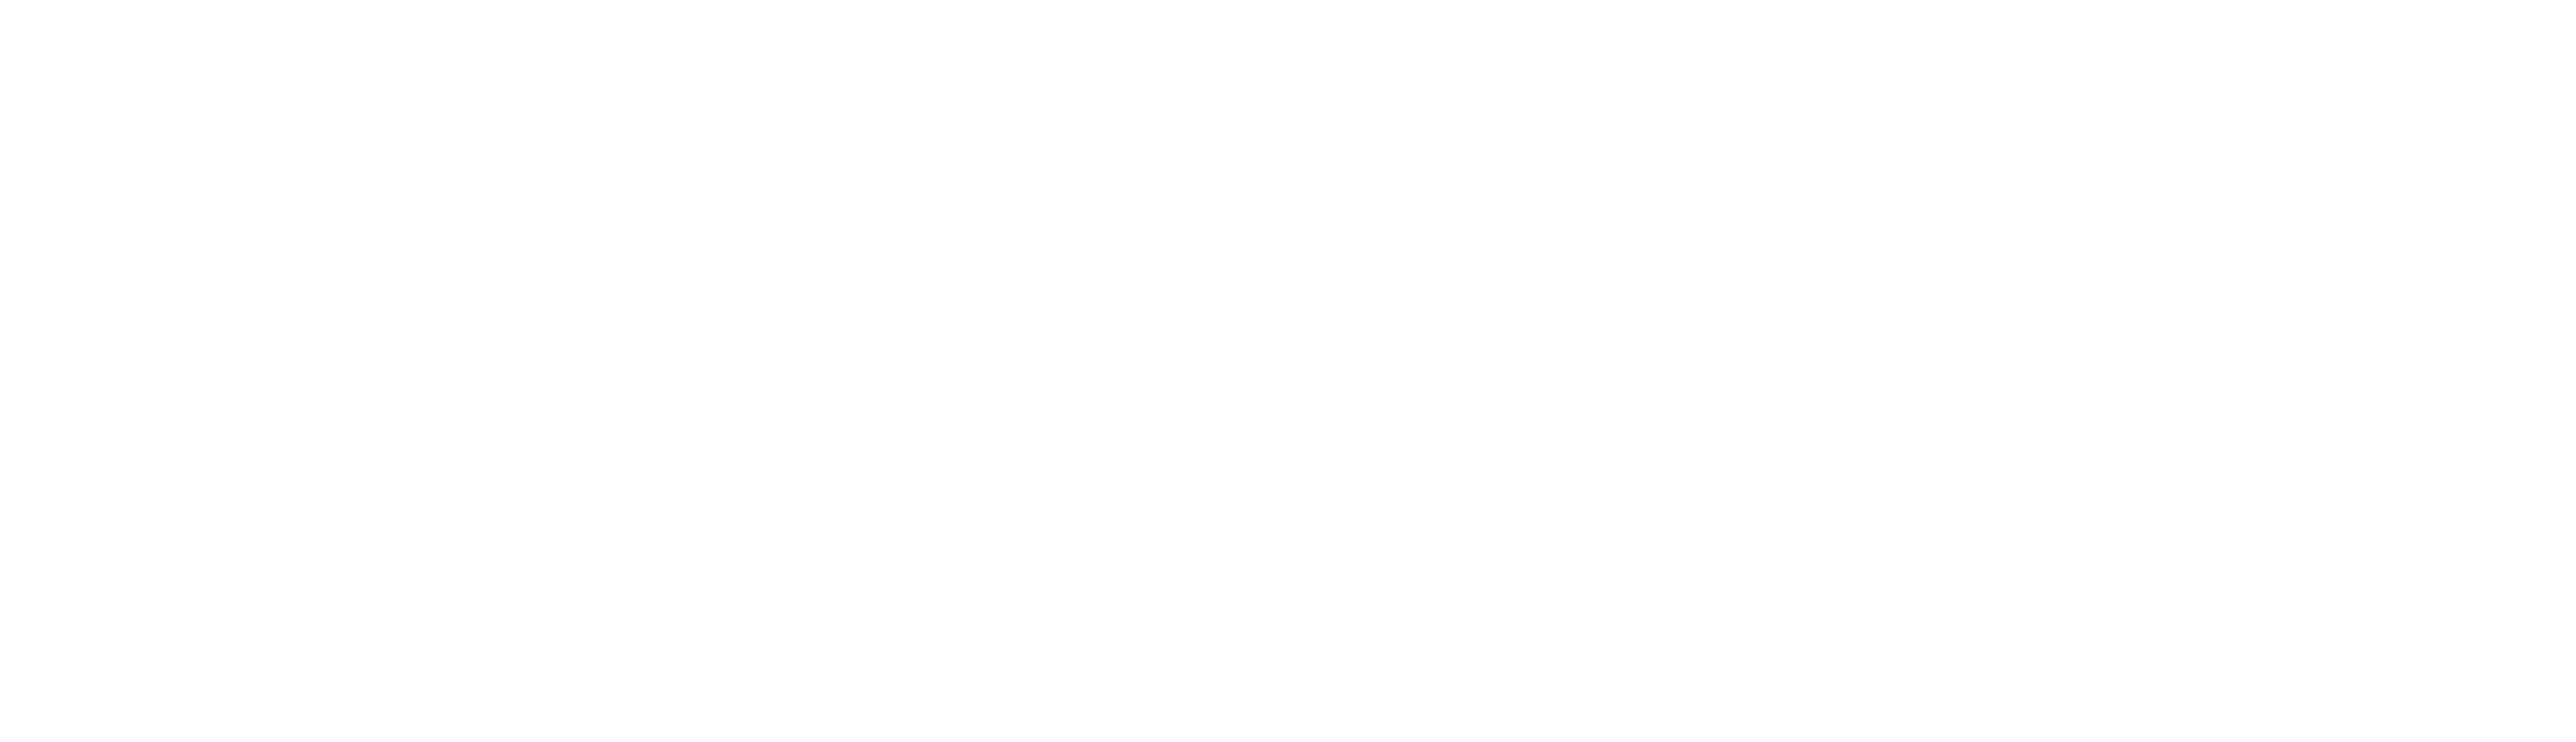 Bay Harbor of Madison Logo plain white on transparent background